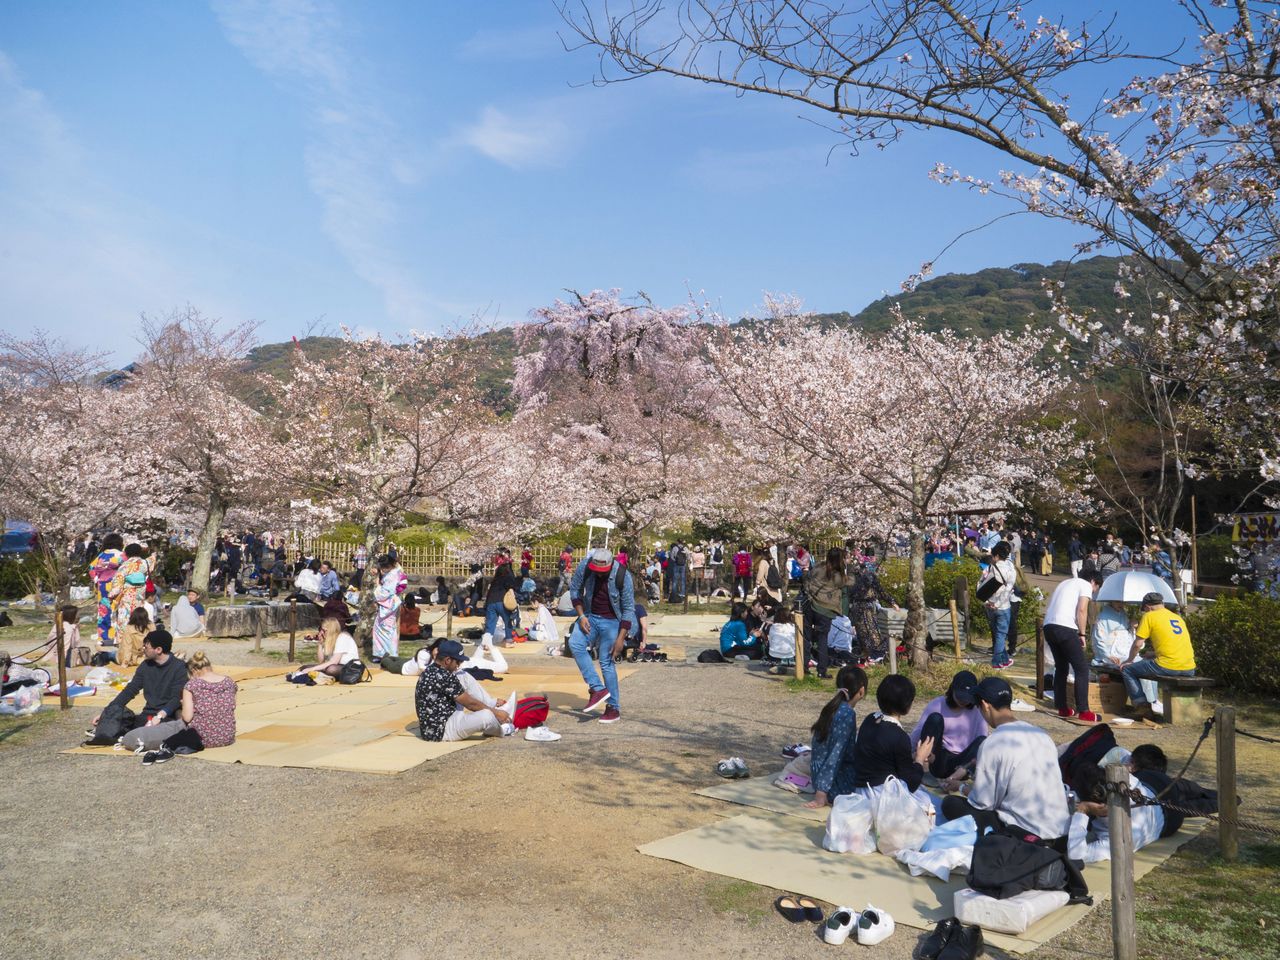 花見客でにぎわう円山公園